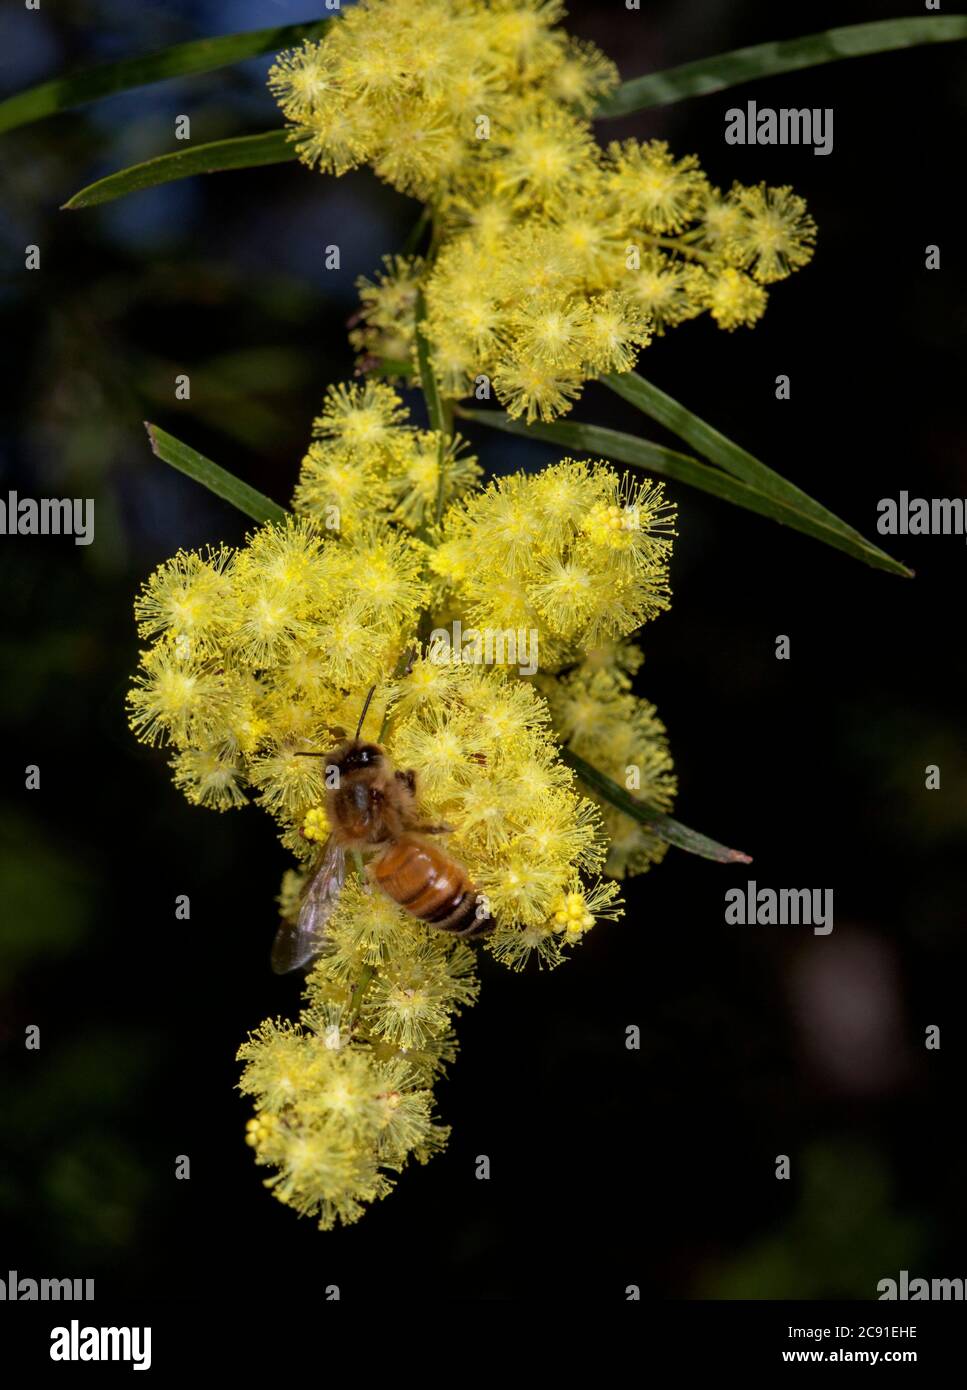 Akazie fimbriata, Brisbane Wattle, mit Biene zwischen Cluster von leuchtend gelben Blüten der Dürre tolerant immergrünen einheimischen Pflanze, australische Wildblumen Stockfoto